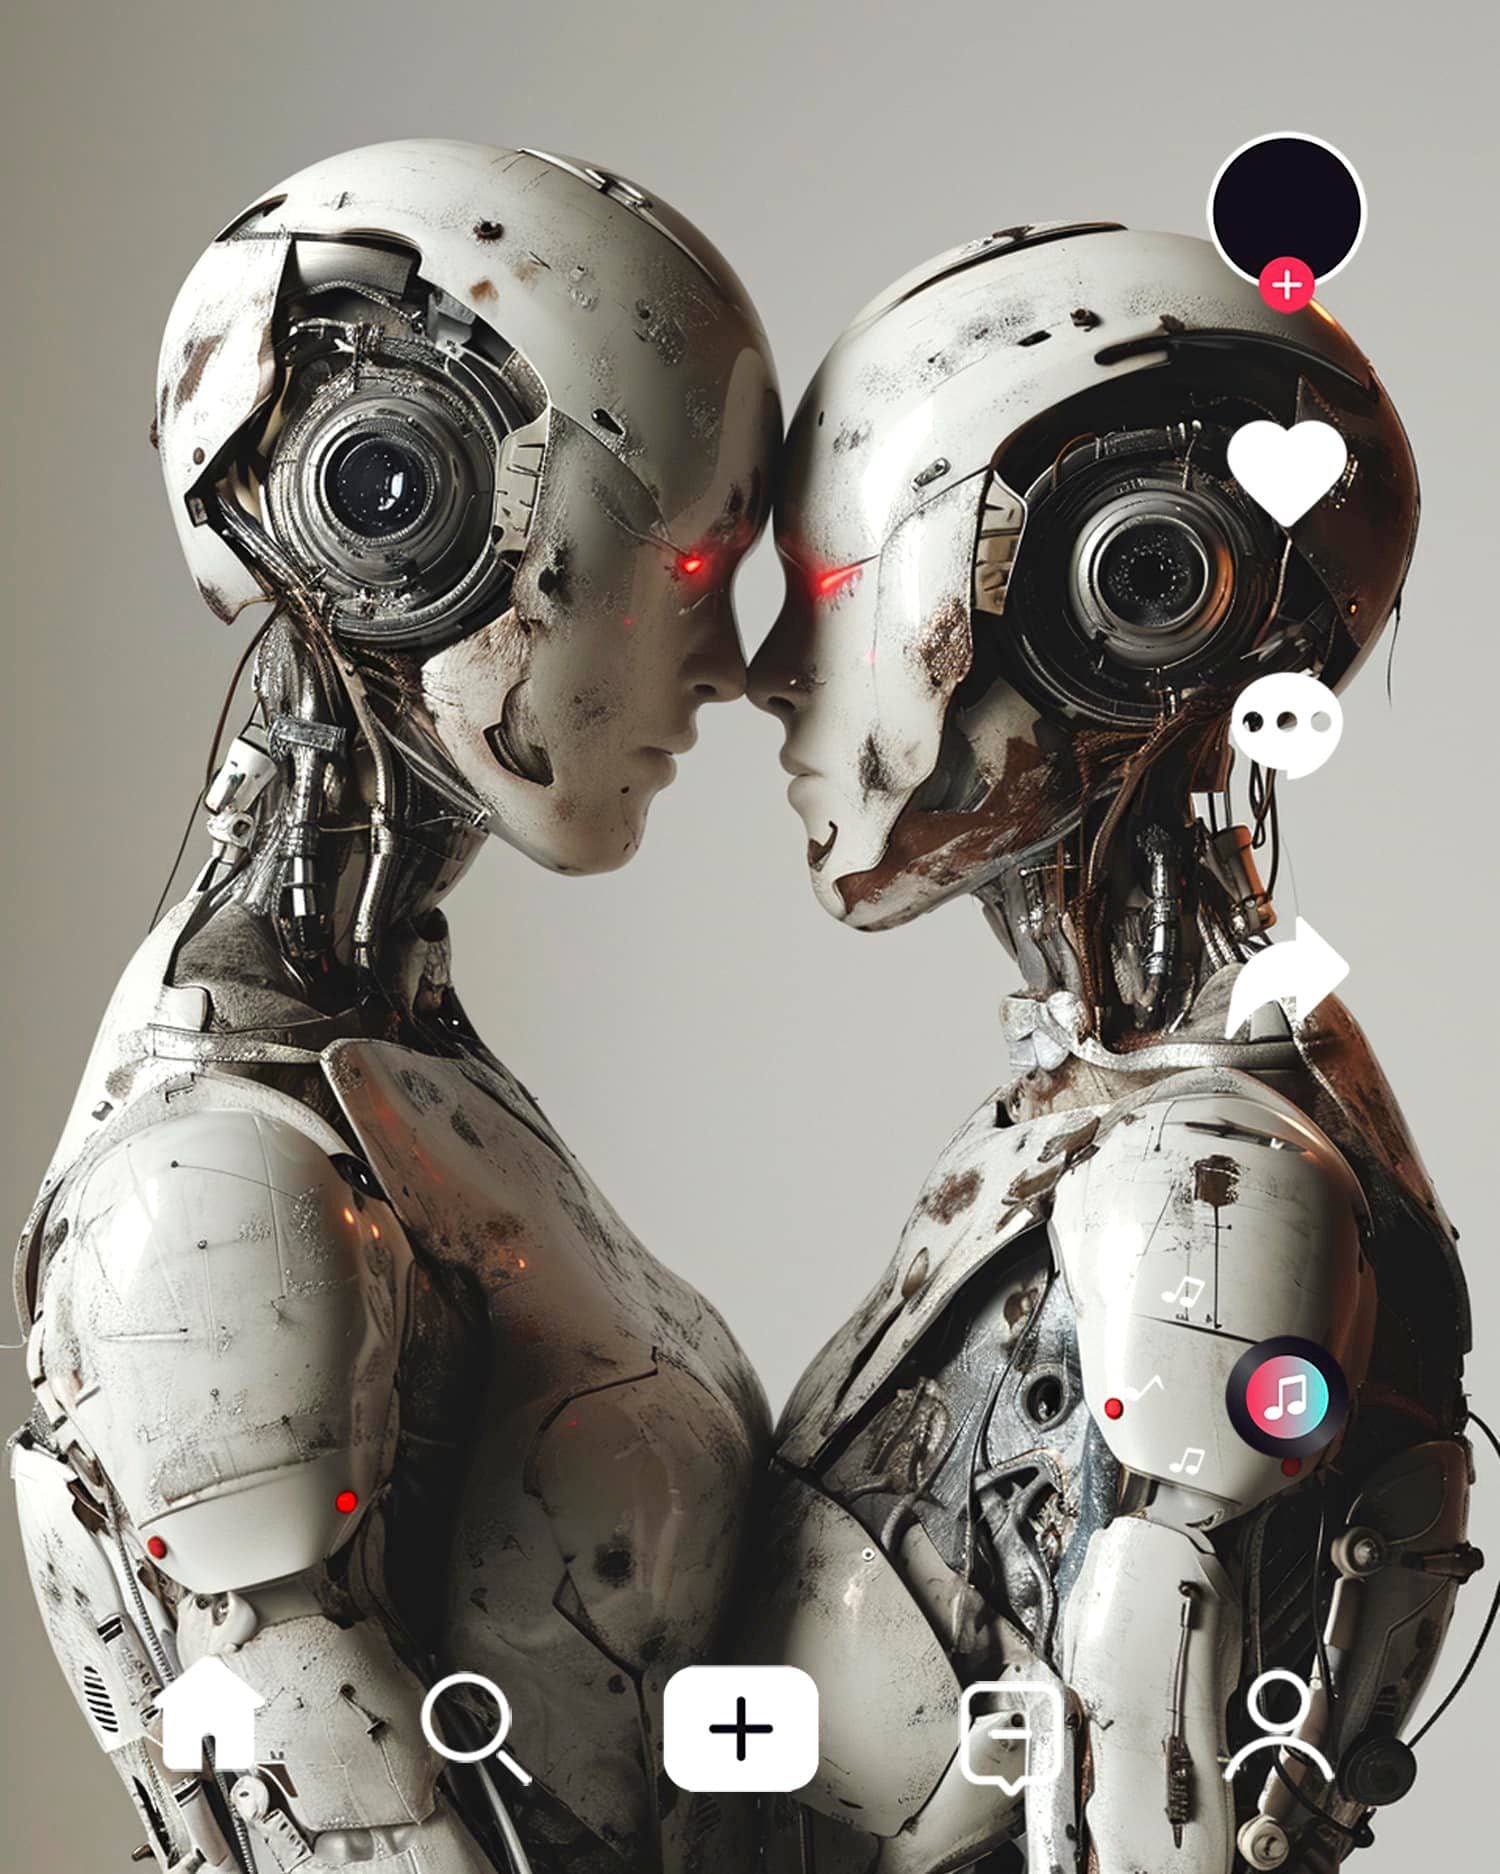 El amor en el futuro de las redes sociales según una IA